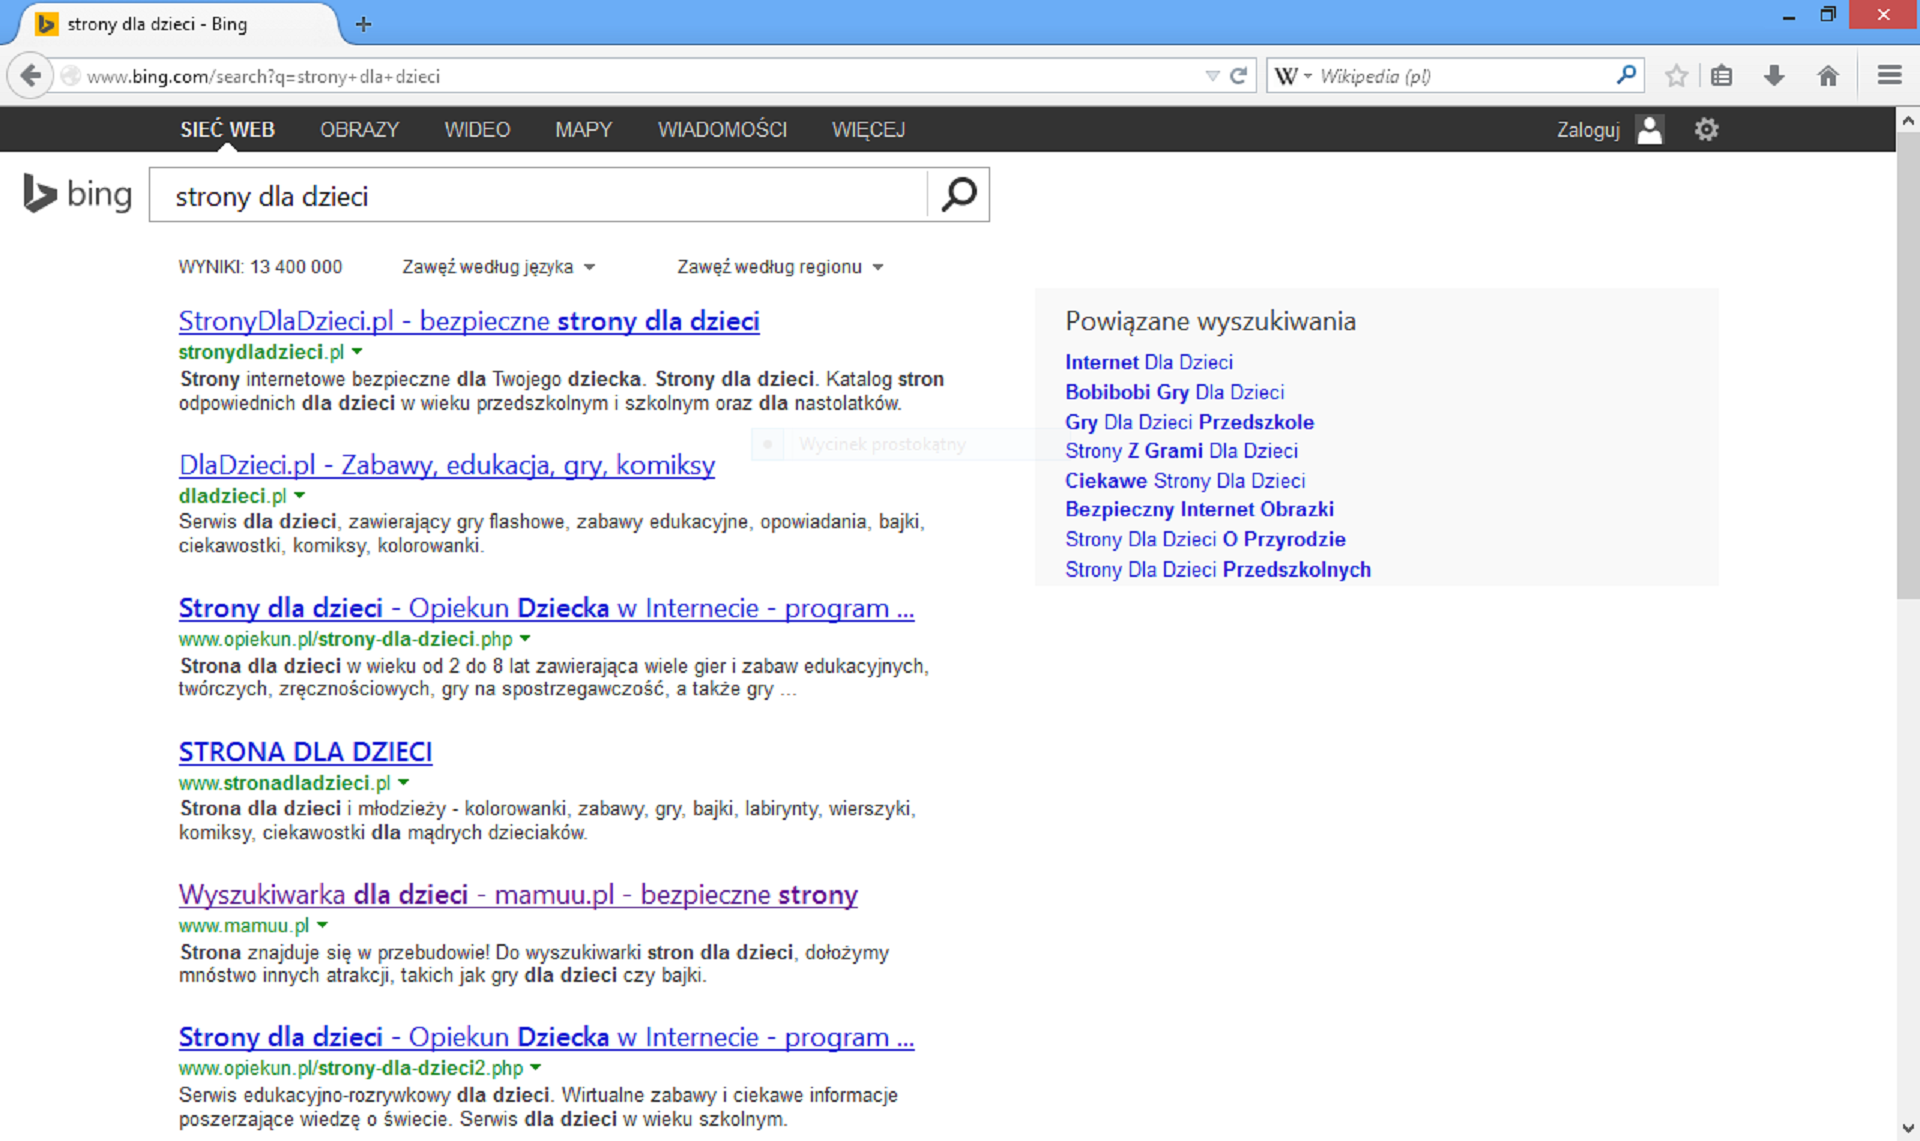 Zrzut okna wyszukiwarki Bing z wykazem znalezionych adresów stron dla dzieci